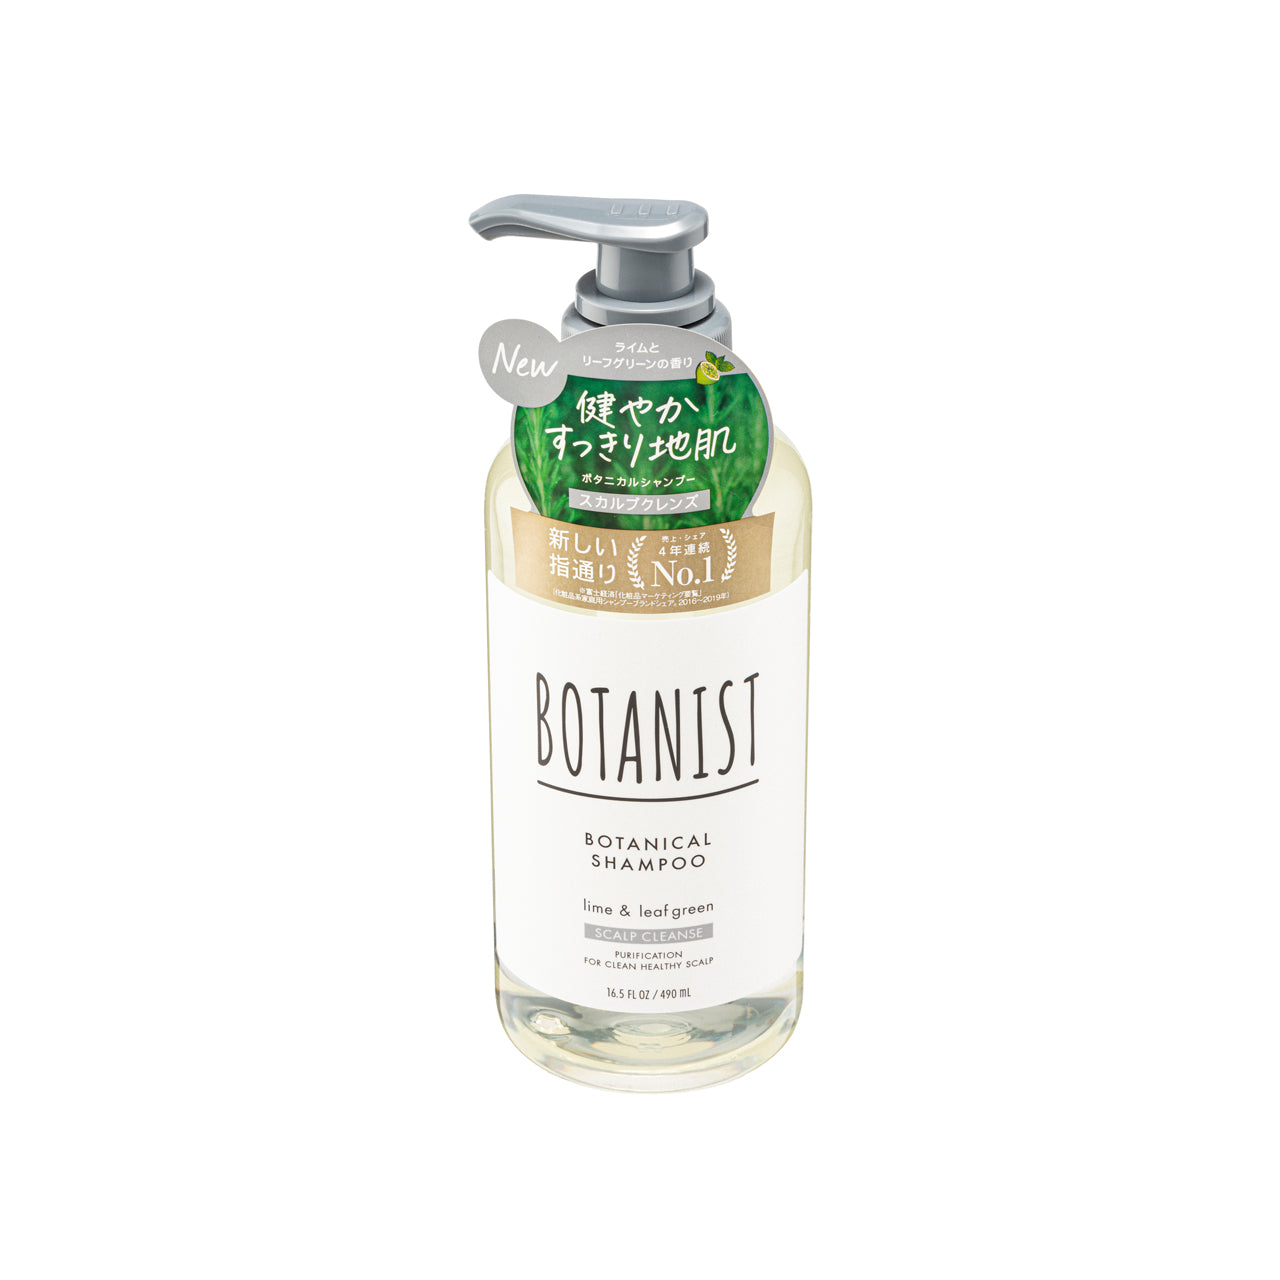 Botanist Scalp Cleanse Botanical Shampoo  Lime and Leaf Green  490ml | Sasa Global eShop